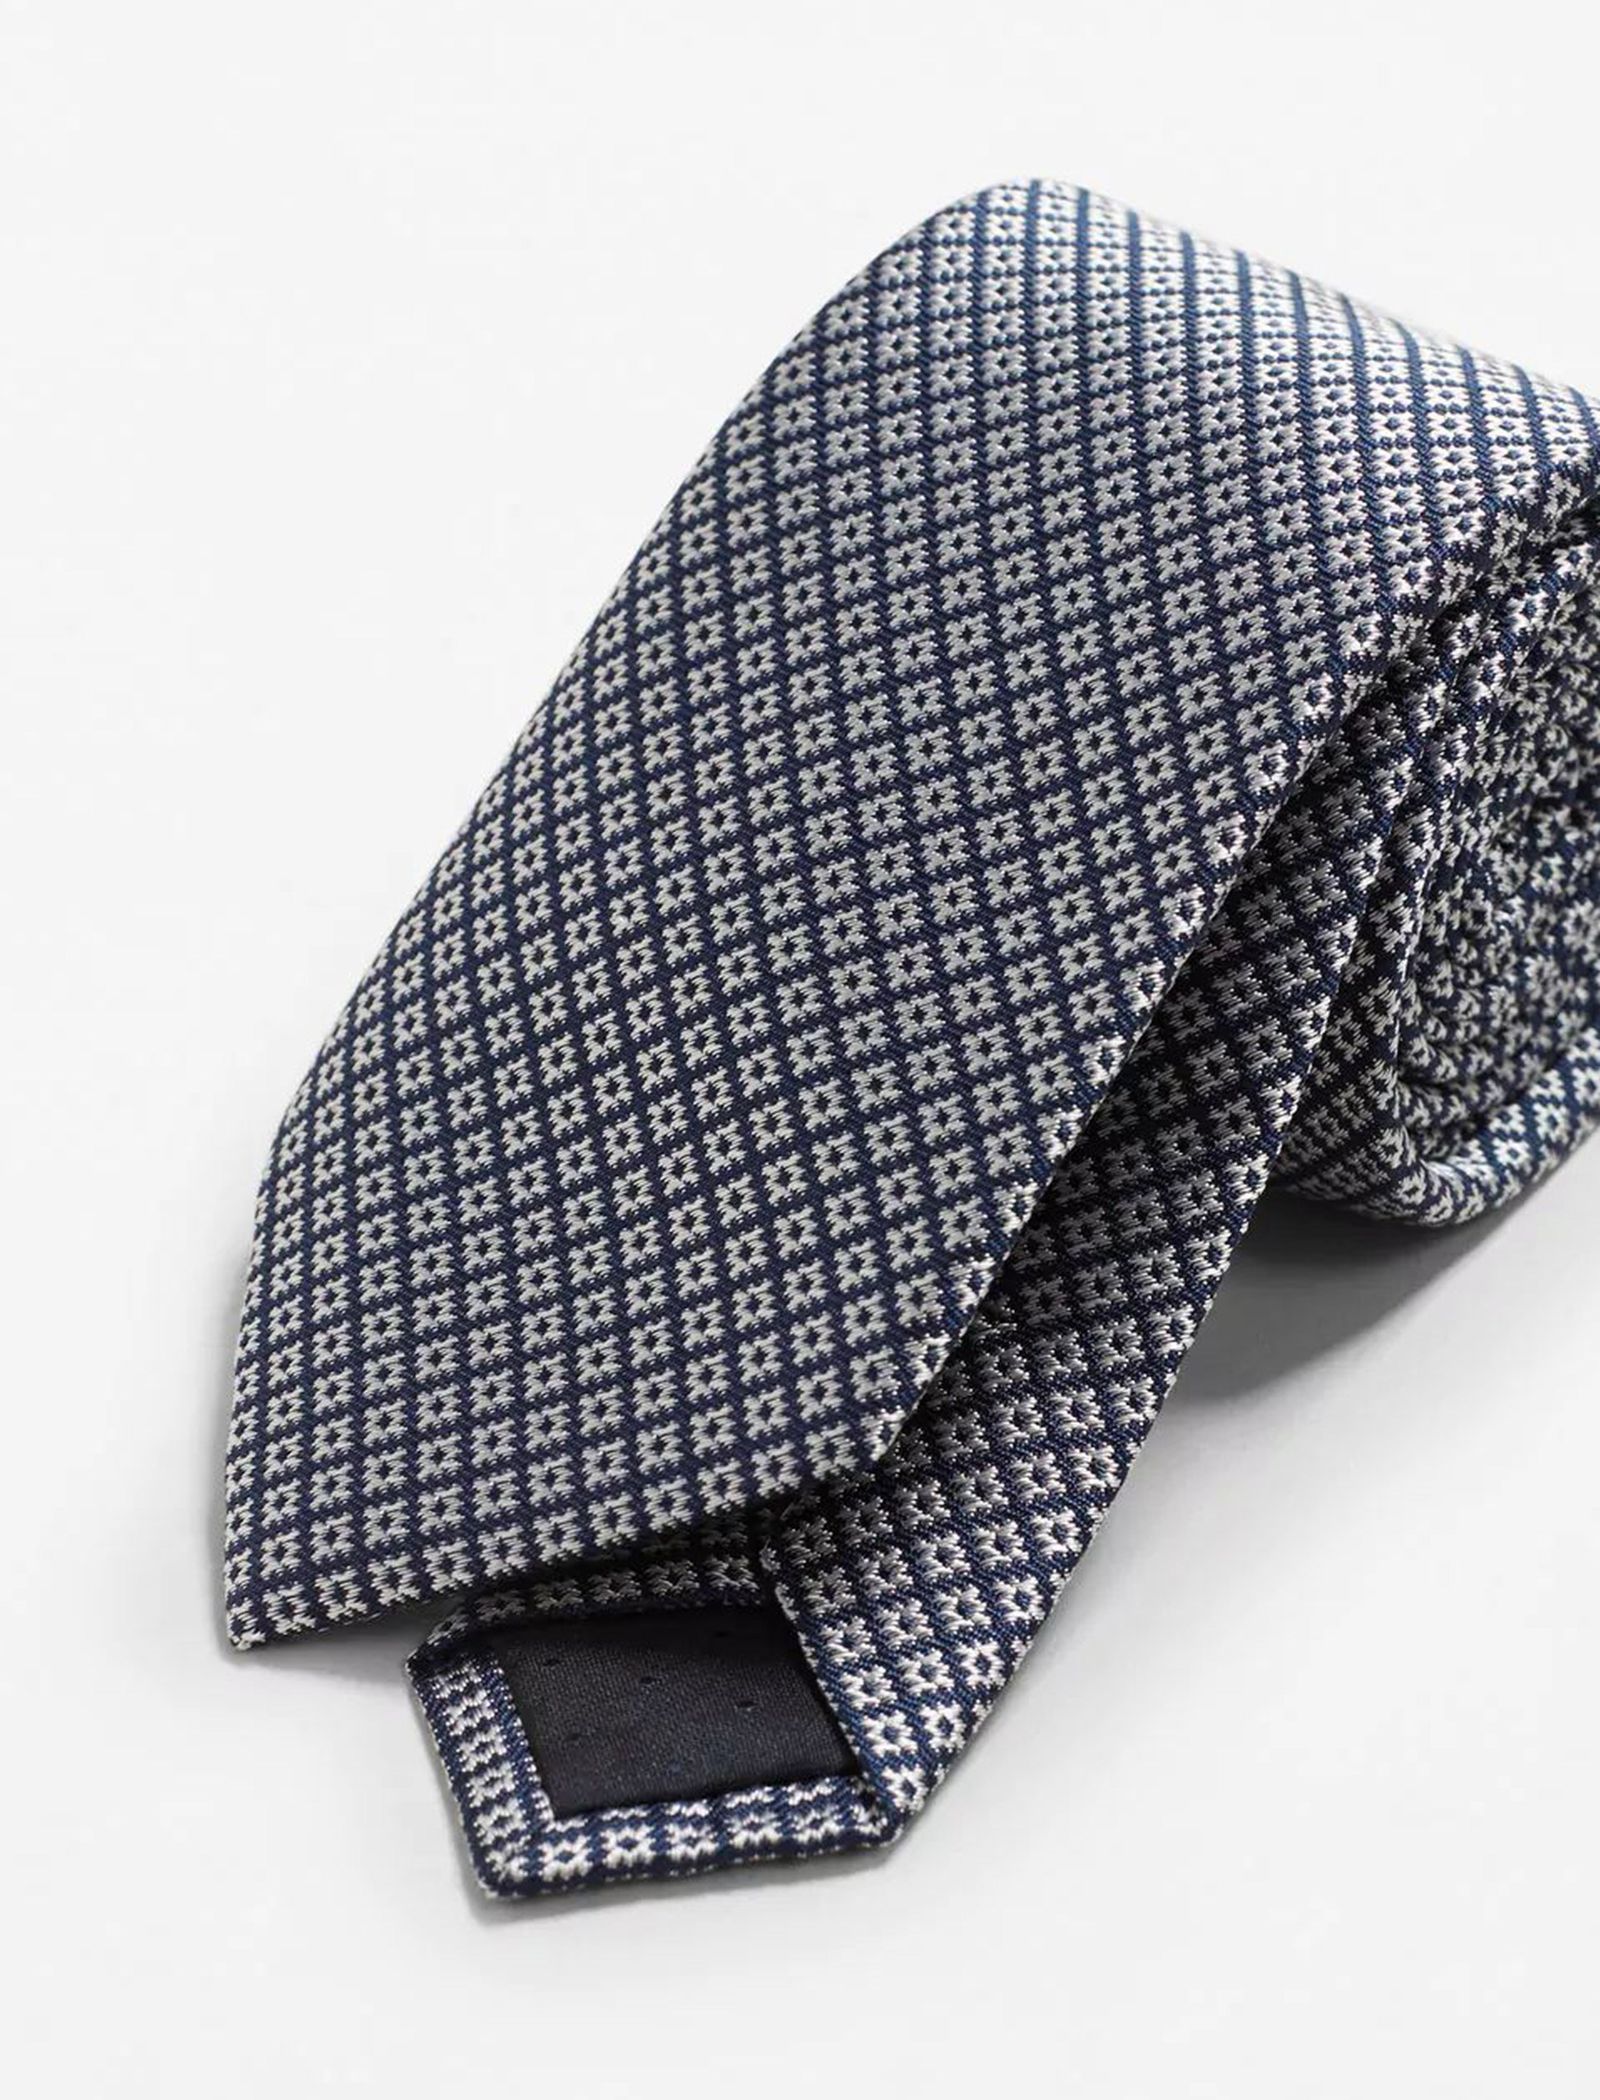 کراوات ابریشم طرح دار مردانه - مانگو - سرمه اي - 4